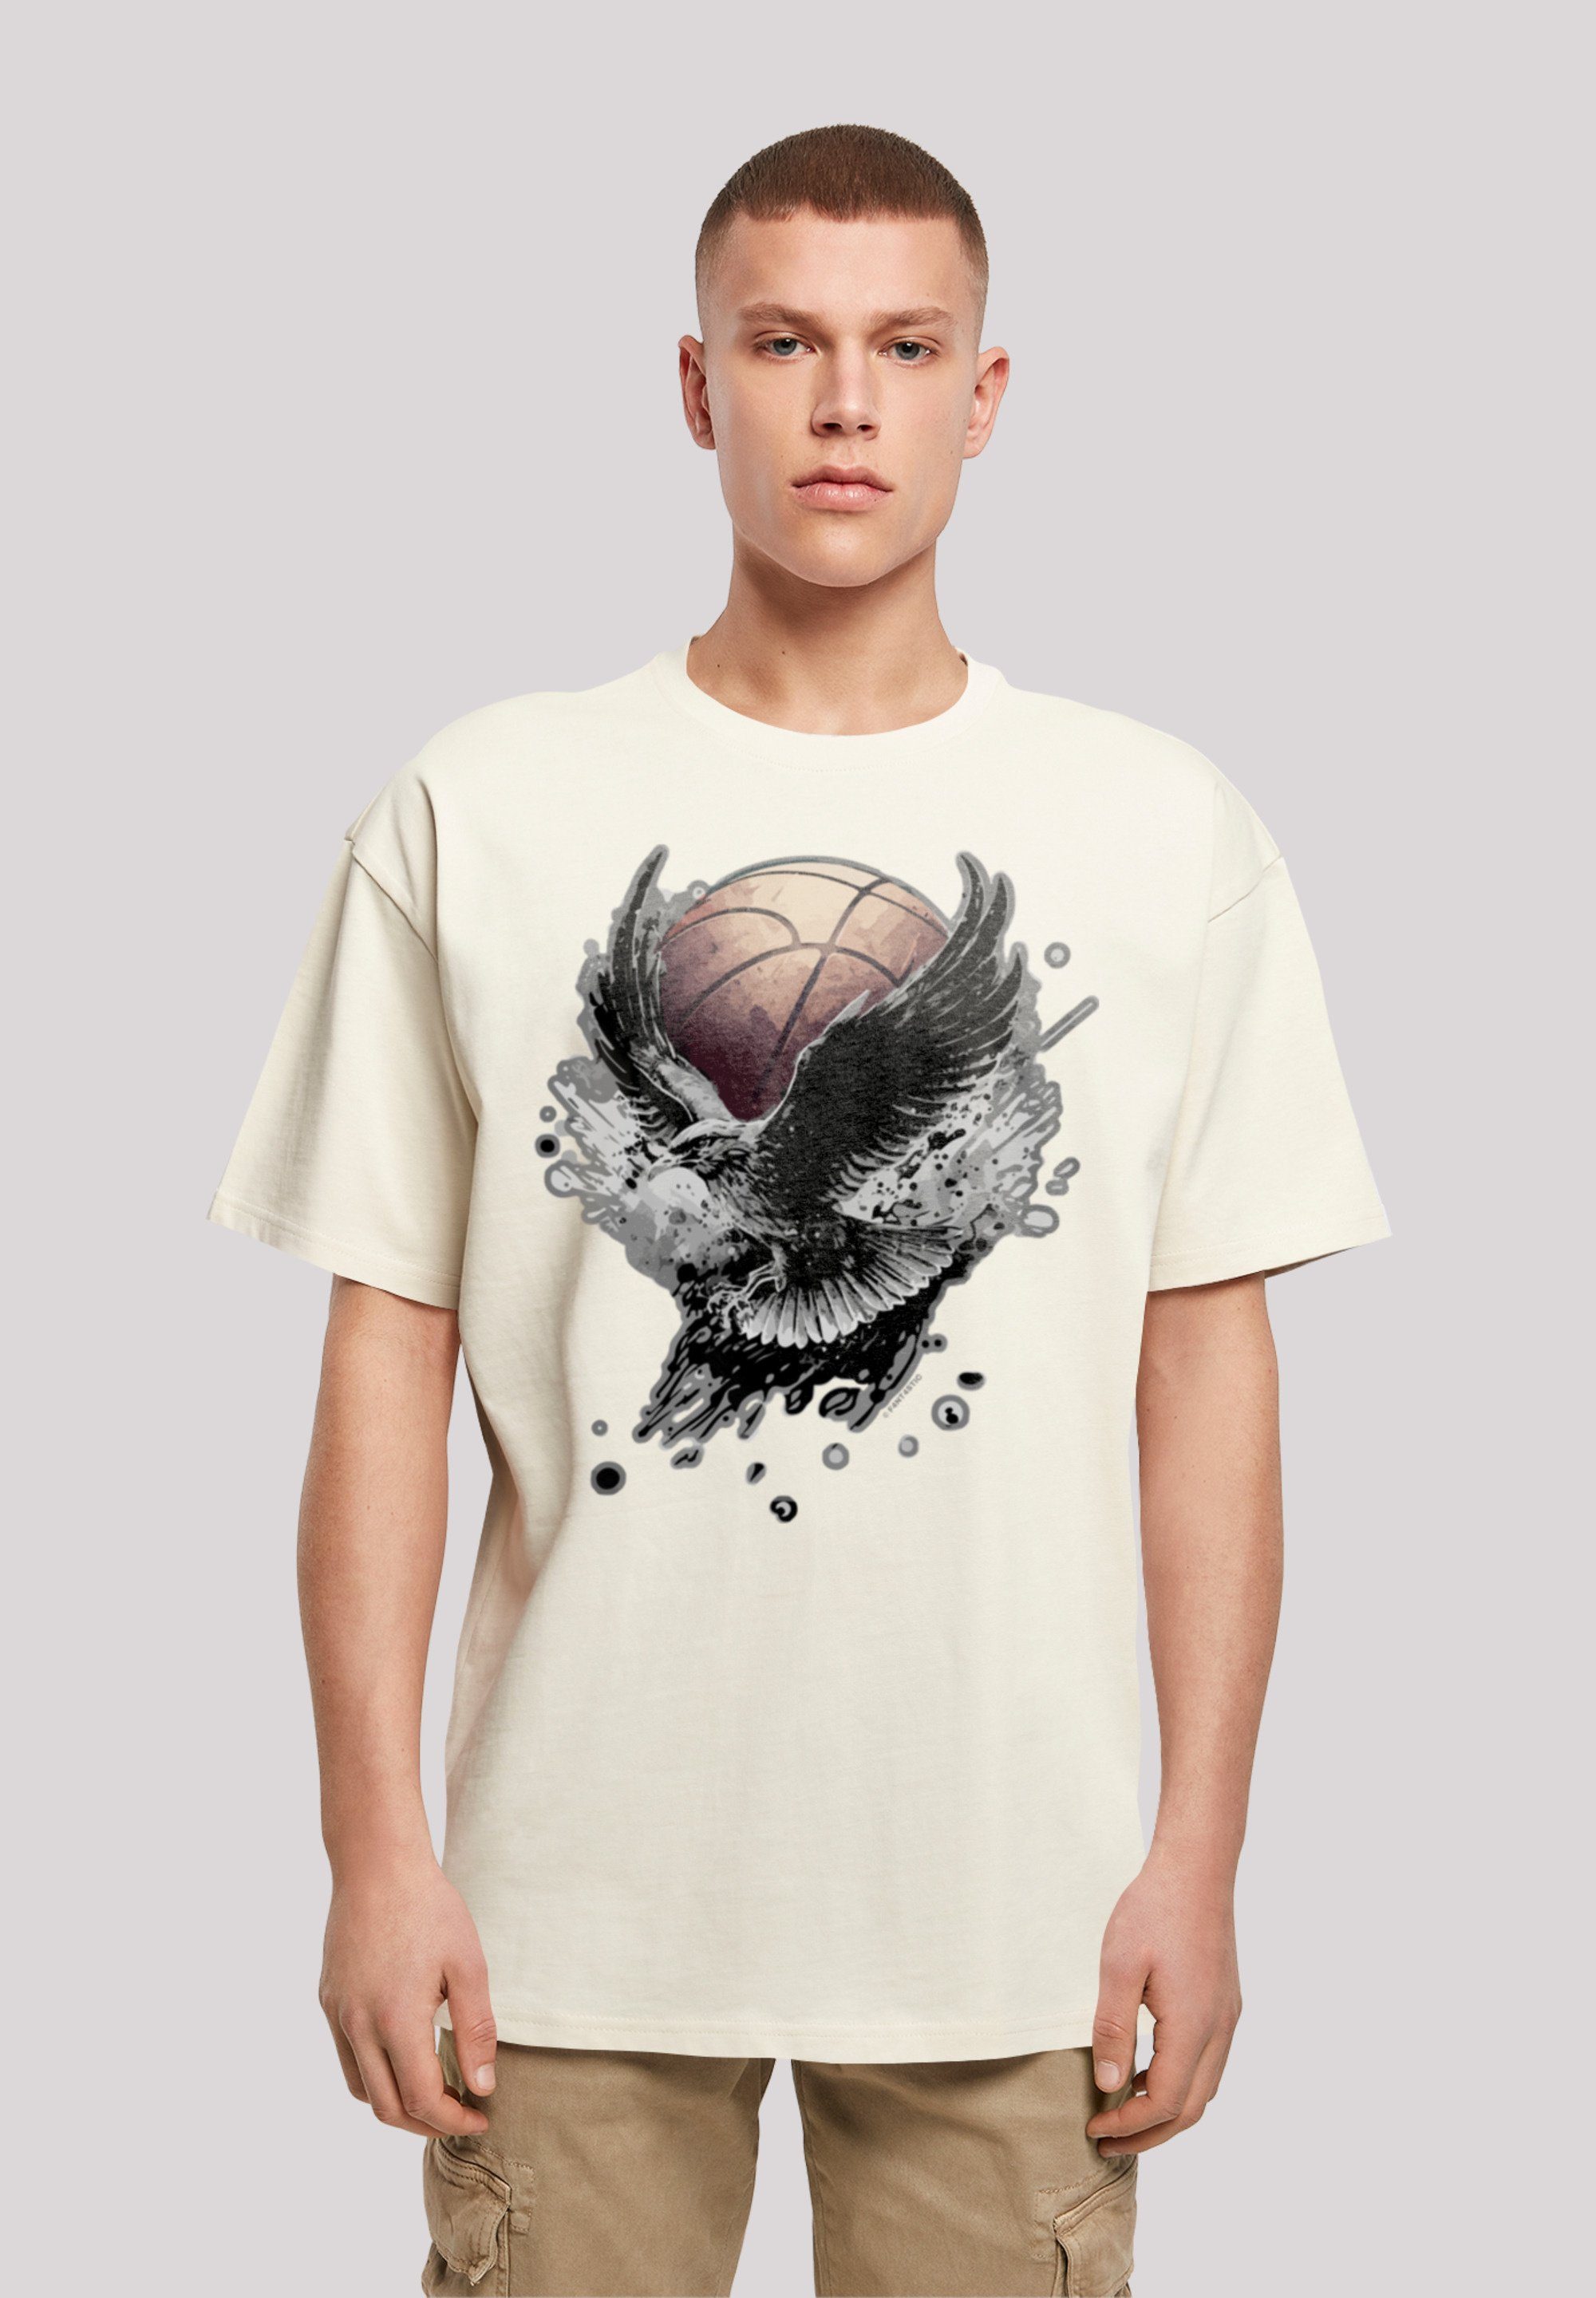 Fällt weit Adler eine Print, T-Shirt Basketball kleiner bestellen F4NT4STIC bitte aus, Größe